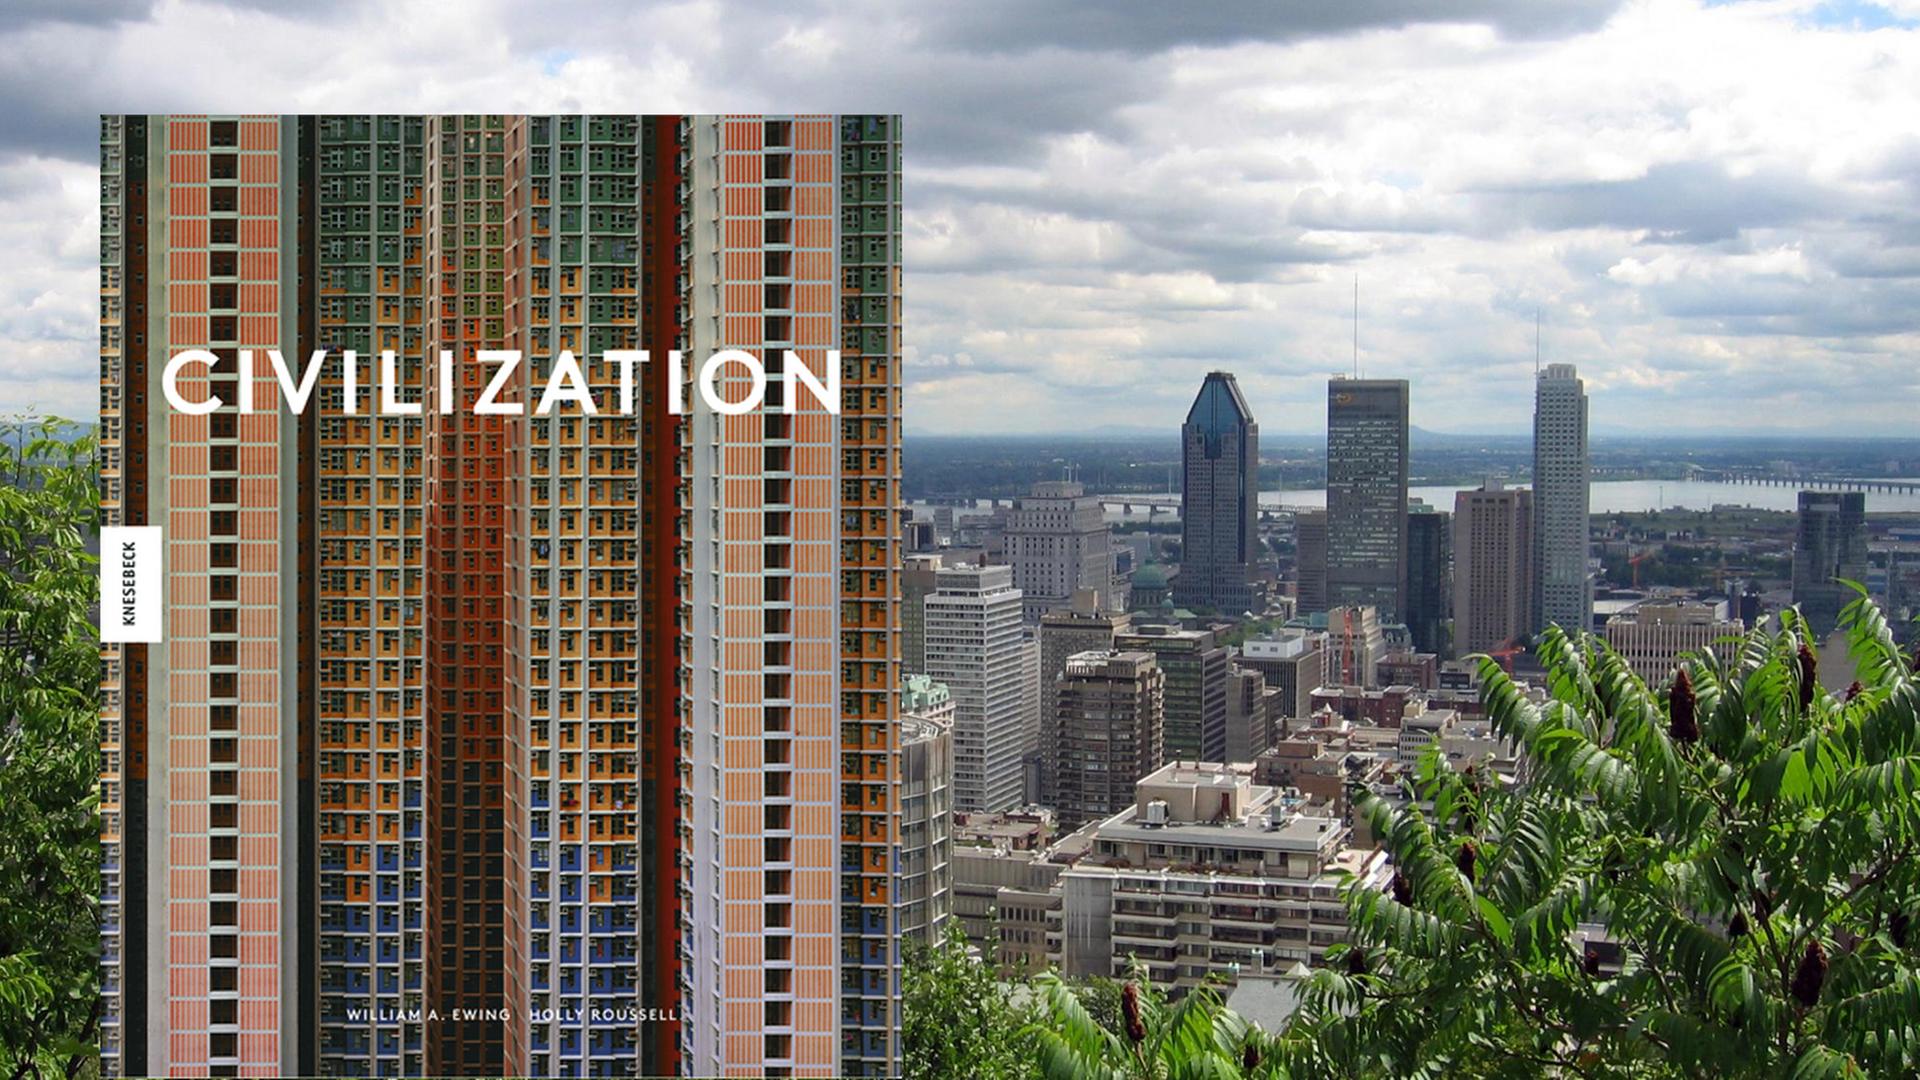 Das Buch "Civilization" - ein Blick auf die Welt durch die Linse zeitgenössischer Fotografen.